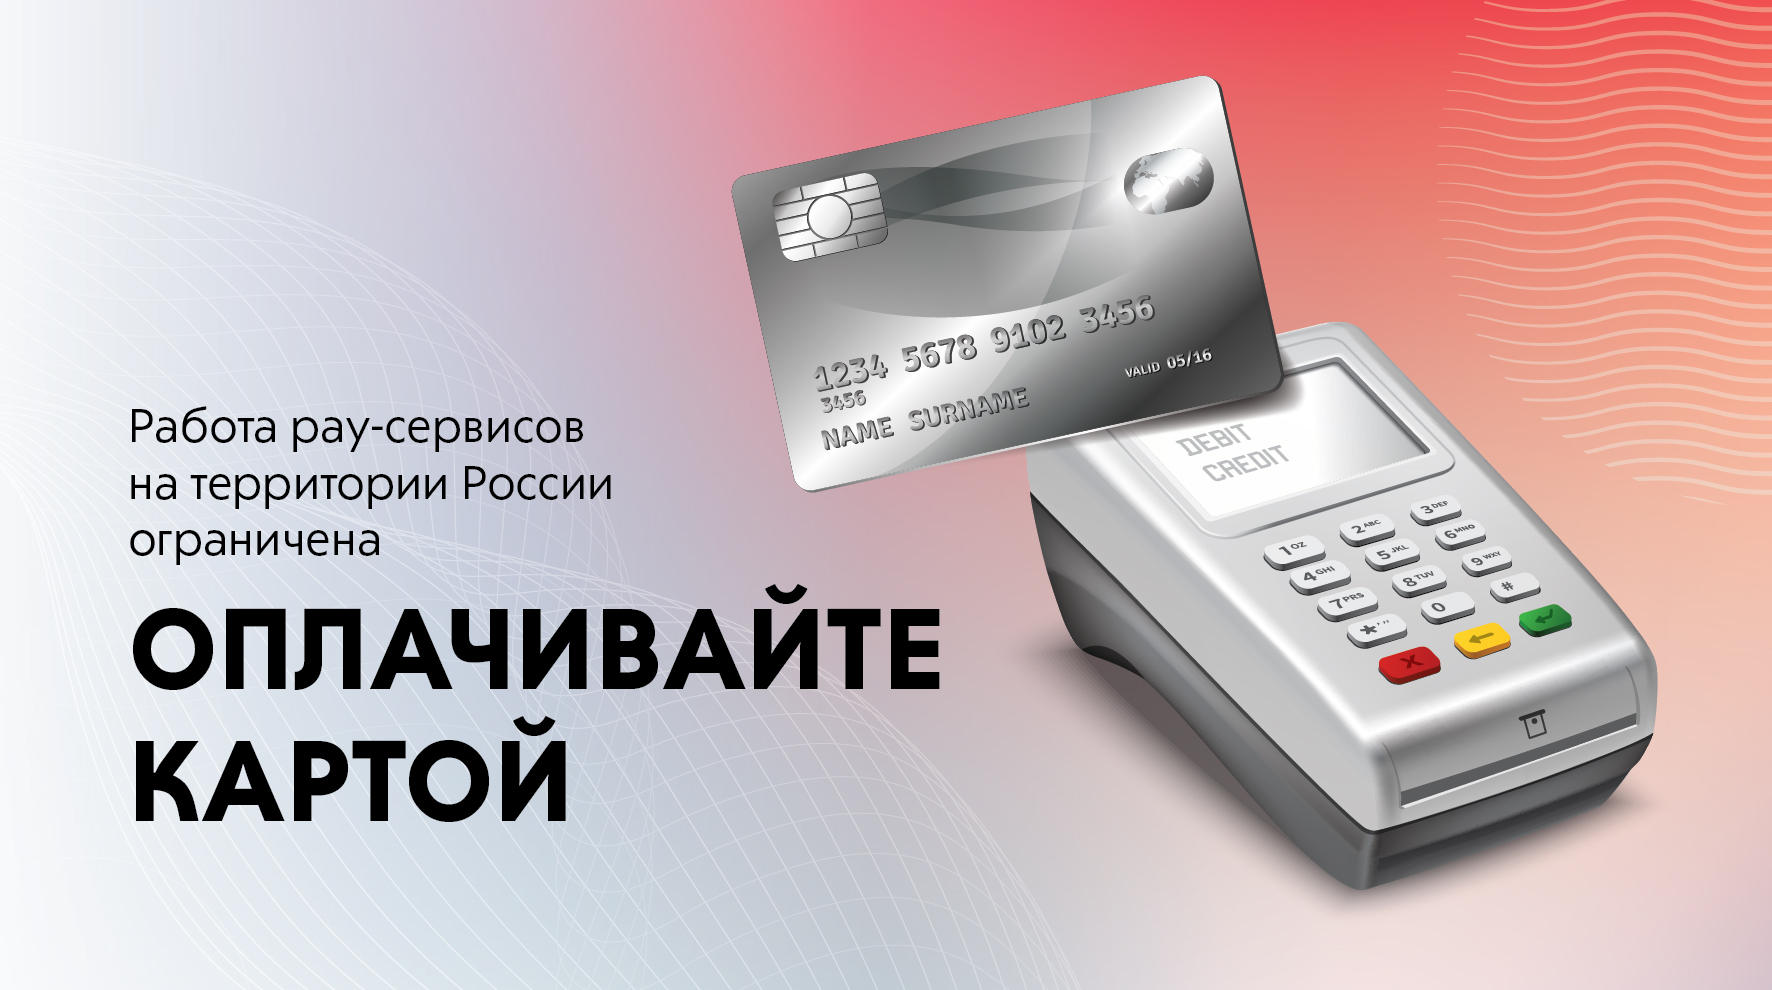 Работа pay-сервисов на территории России ограничена